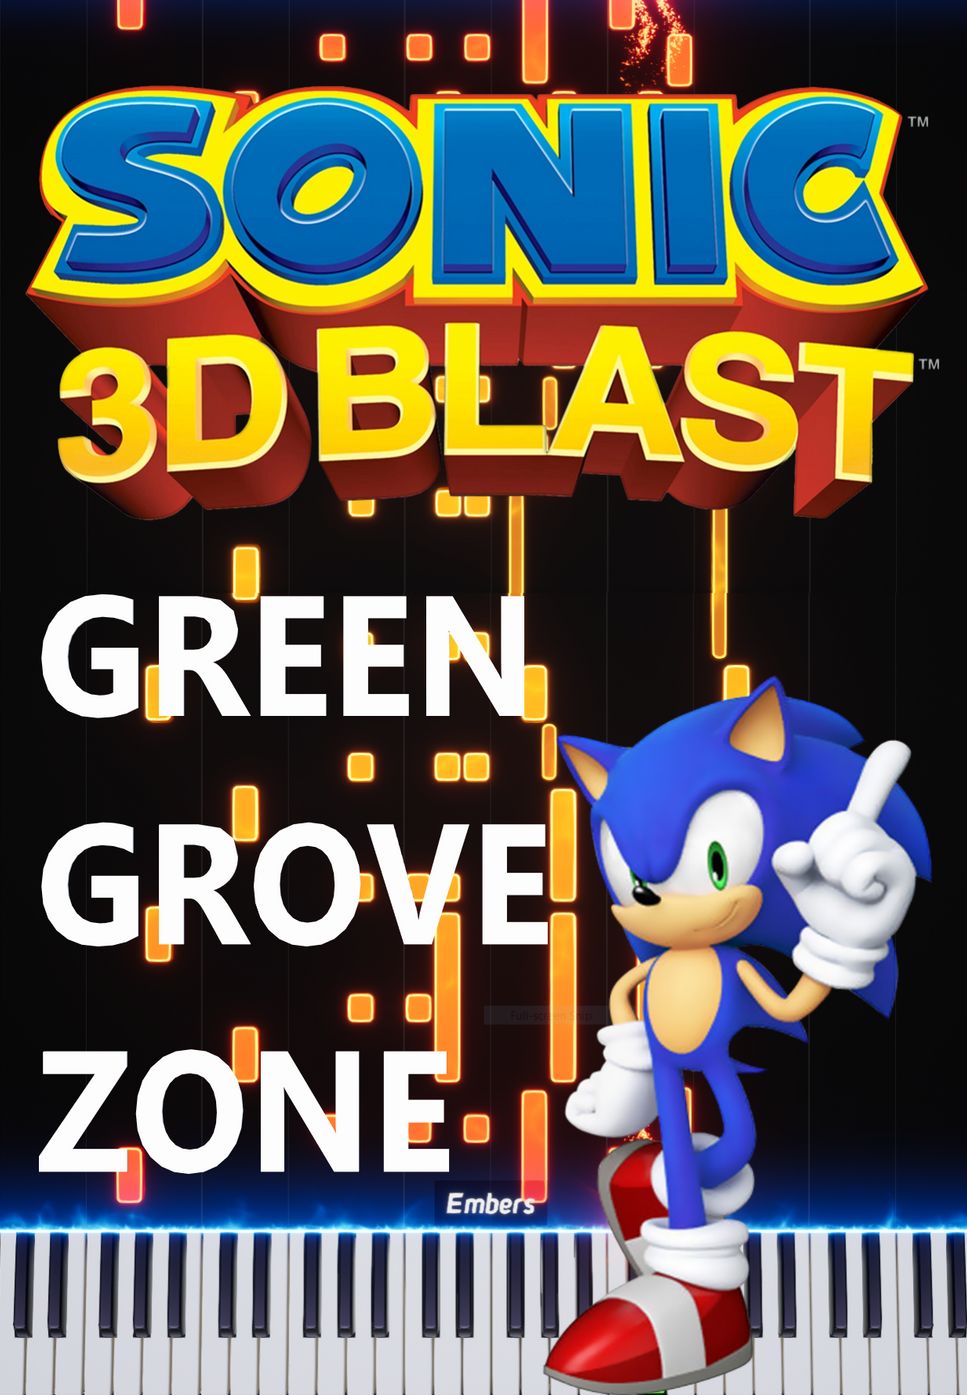 Sonic 3D Blast - Green Grove Zone by Derrick Yu